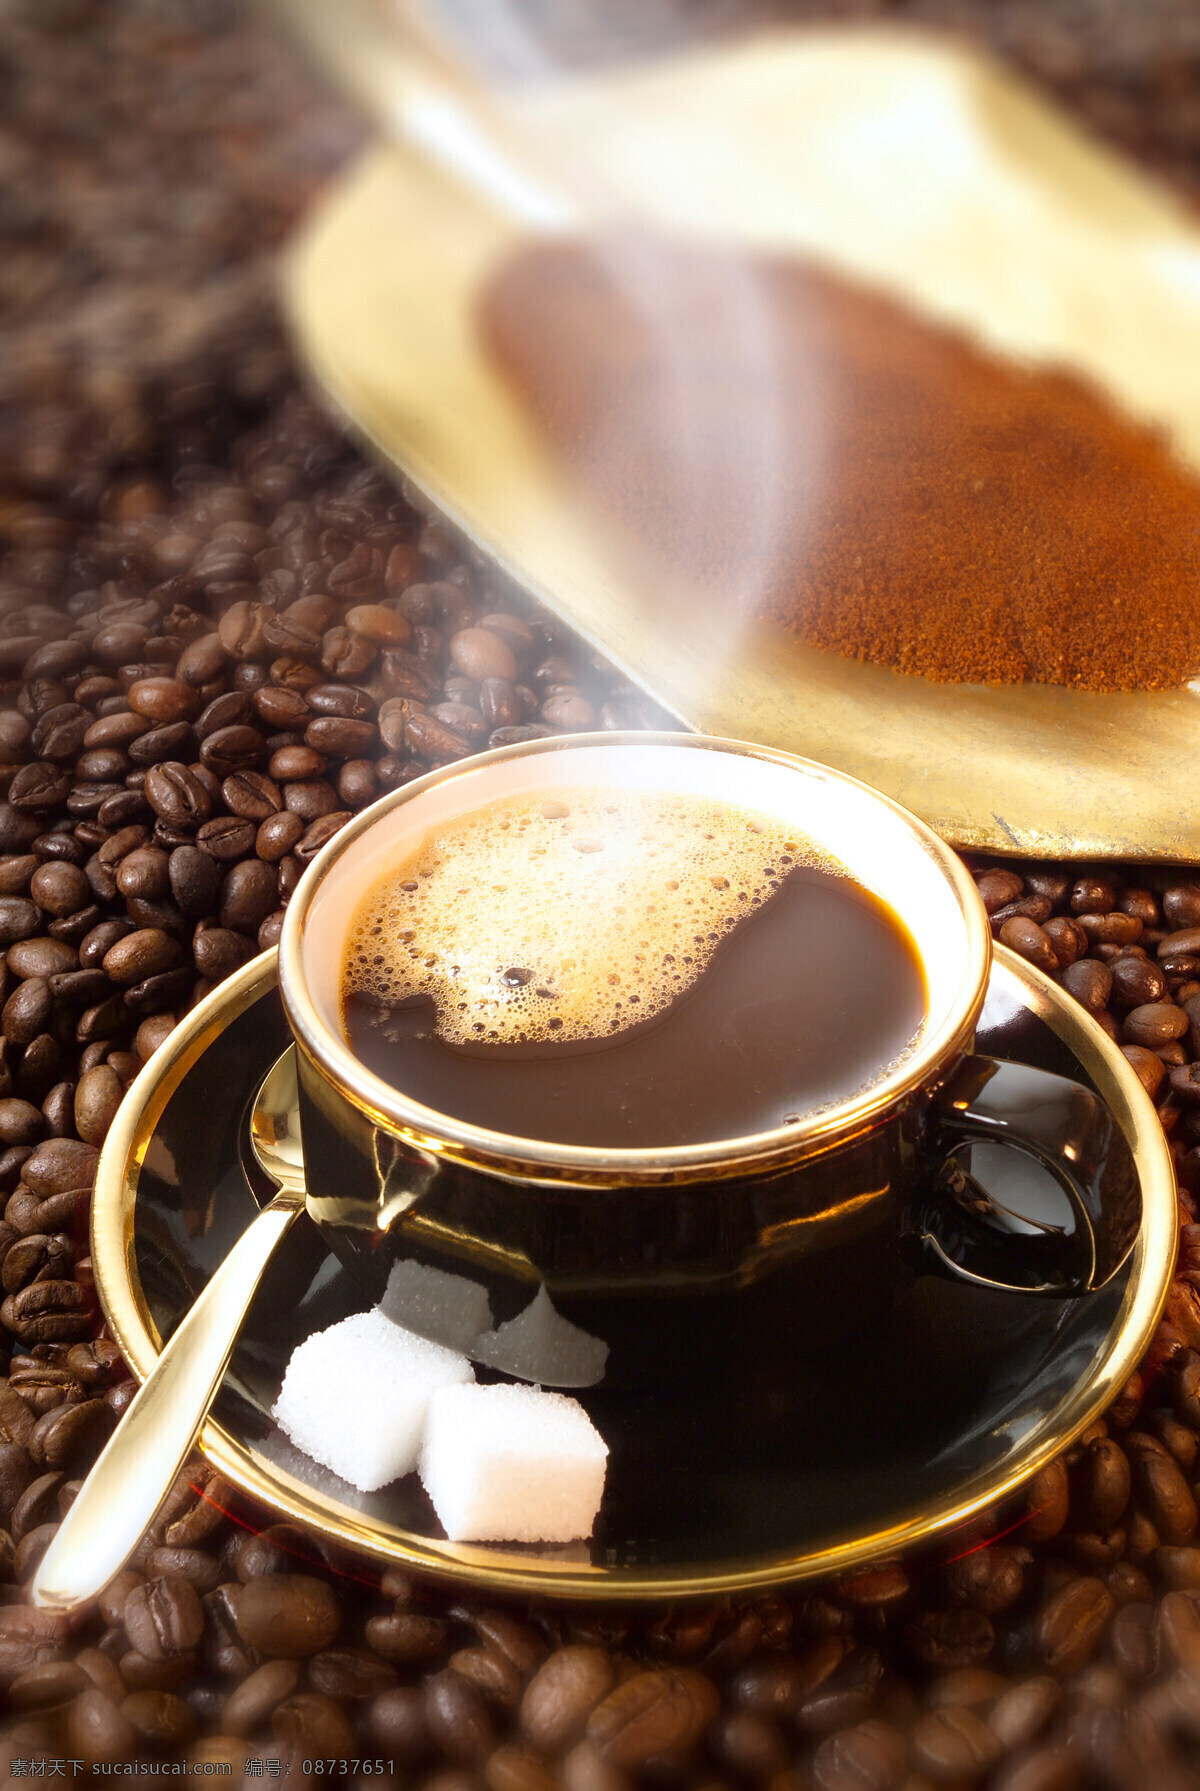 香 浓 咖啡 咖啡豆 咖啡杯 牛奶加咖啡 coffee 浓缩咖啡 浪漫咖啡 意大利咖啡 饮料酒水 餐饮美食 咖啡图片